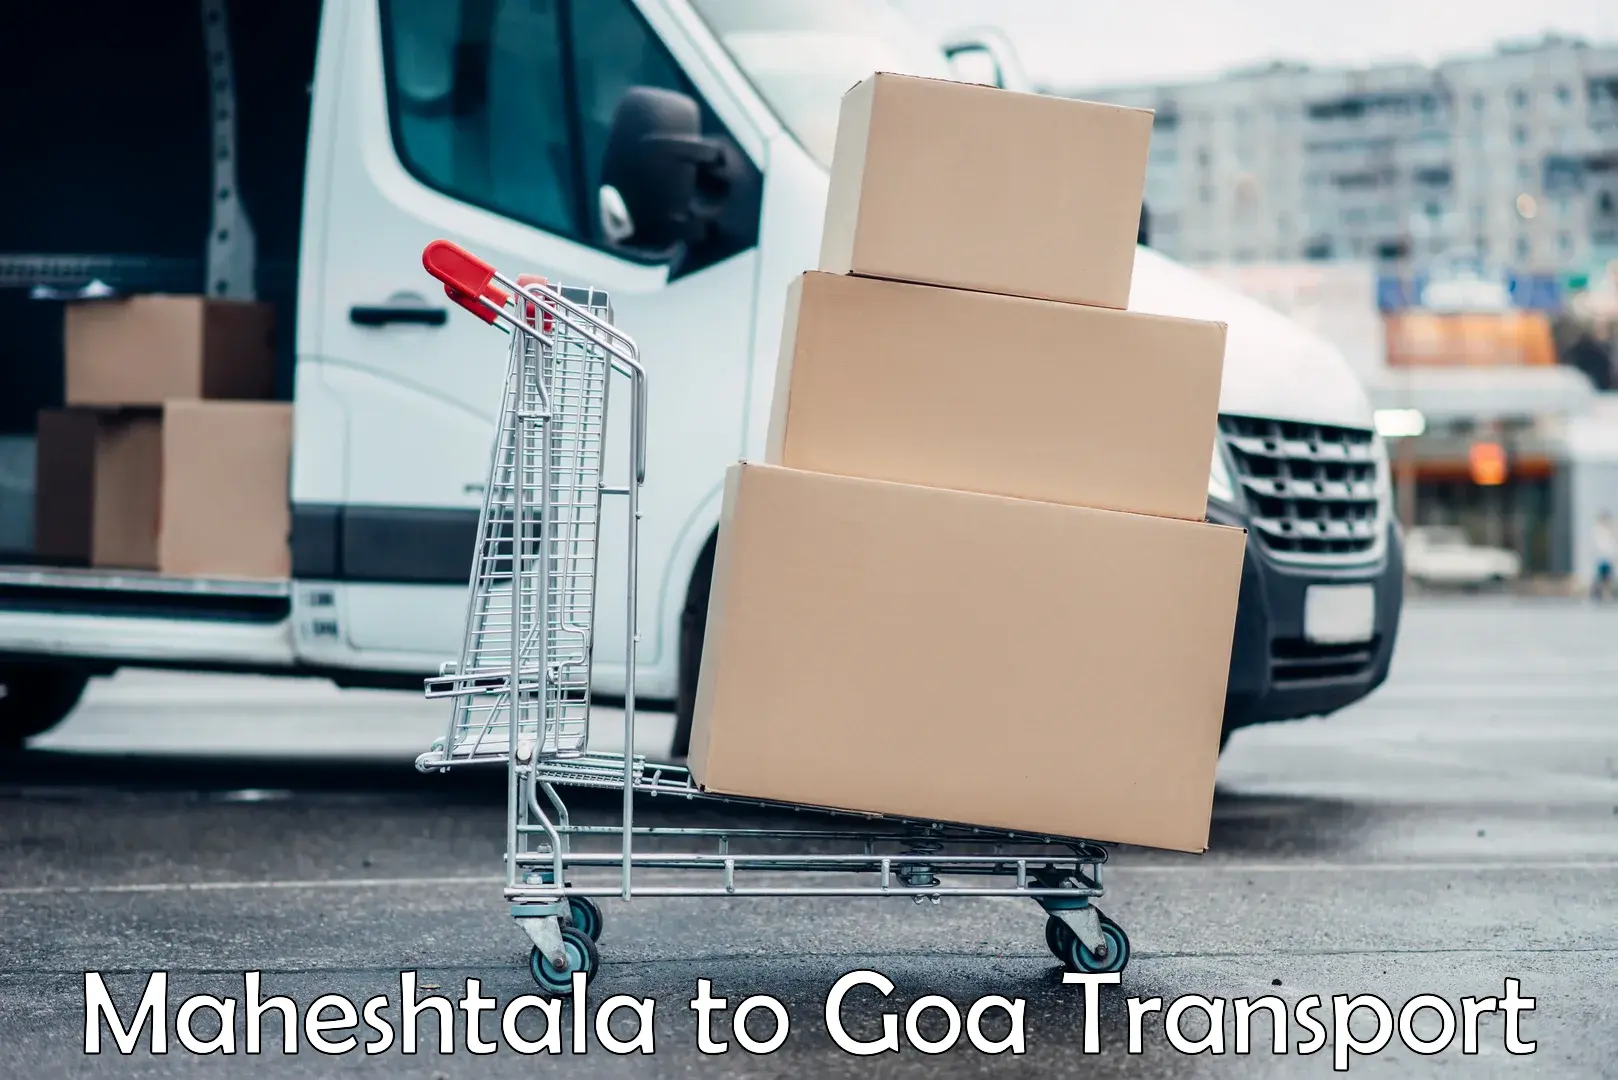 Delivery service Maheshtala to Goa